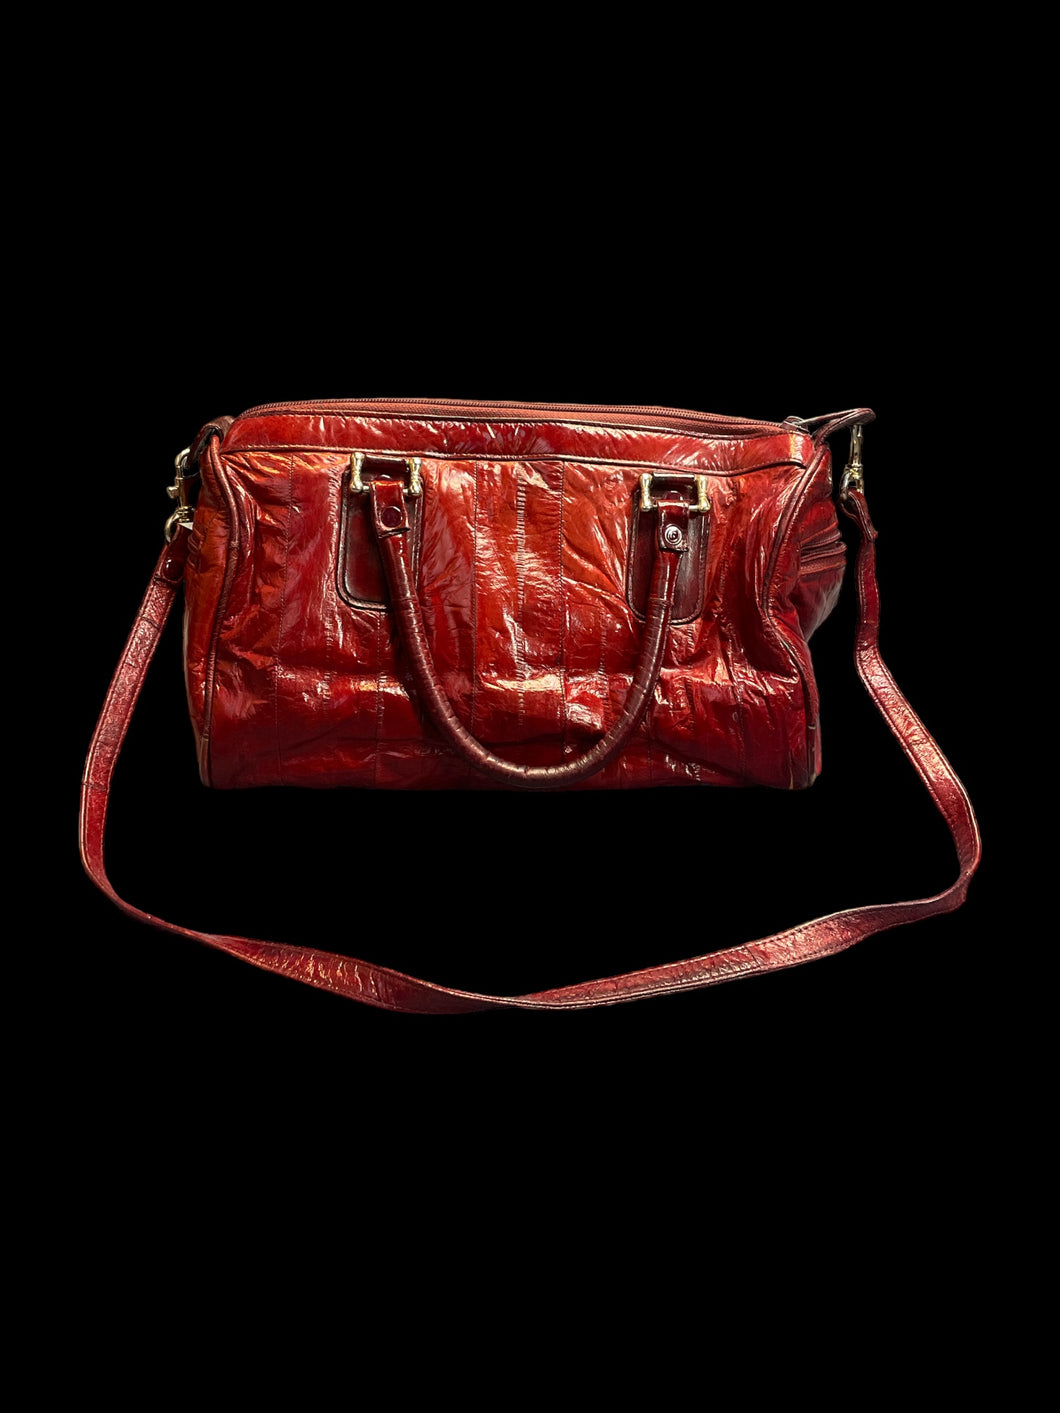 Red eel skin hand bag w/ shoulder strap, silvertone hardware, &side pockets,  internal pocket